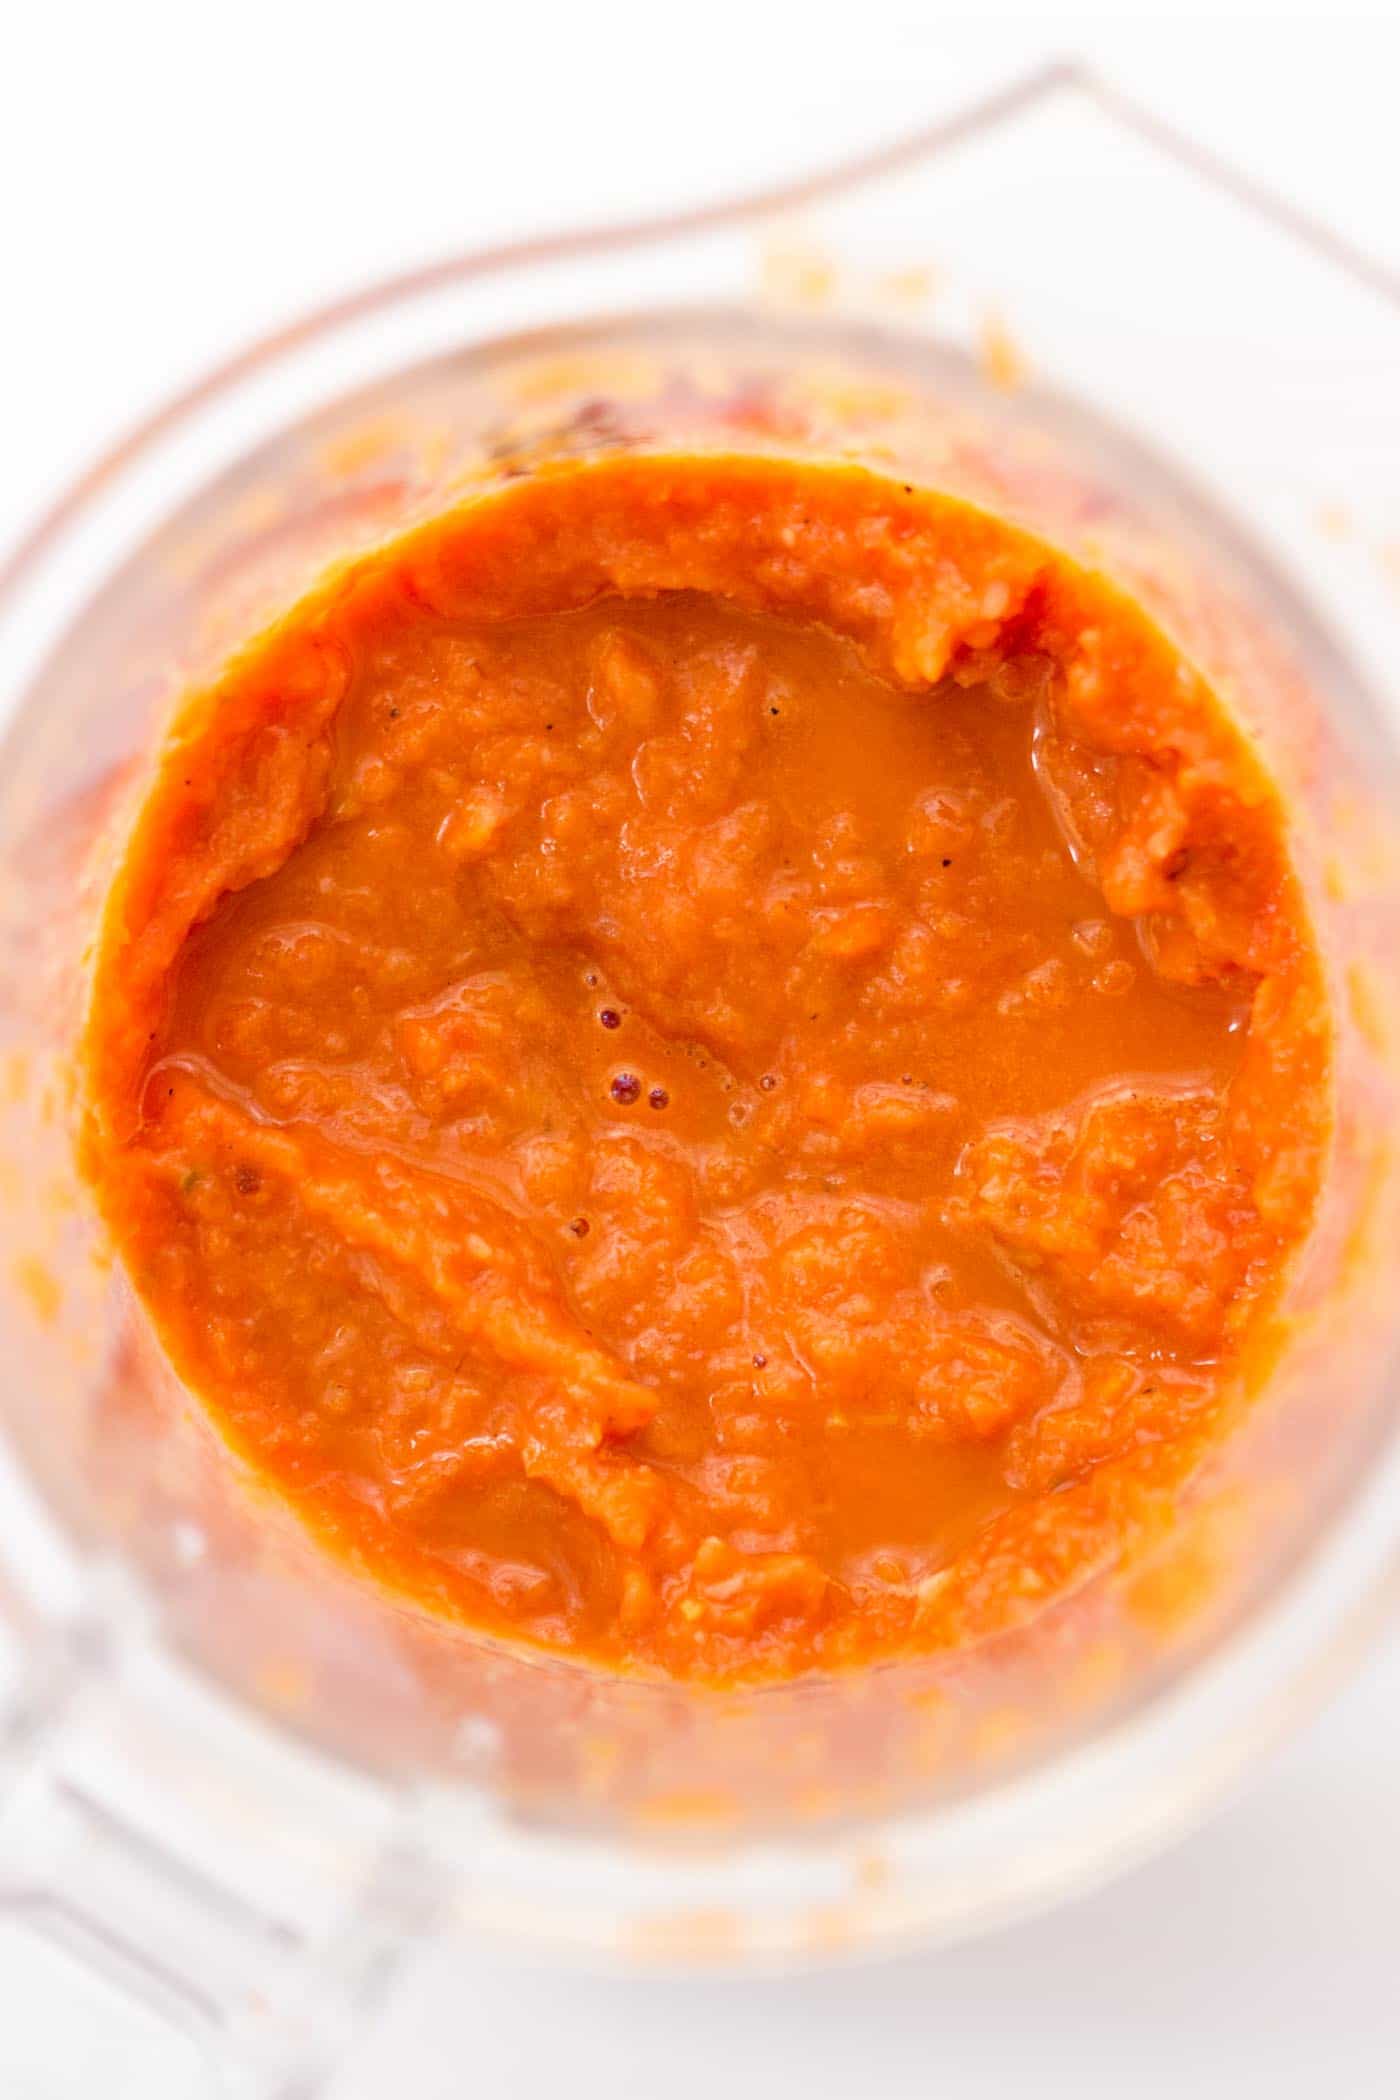 Pureed vegan bolognese sauce inside a blender.